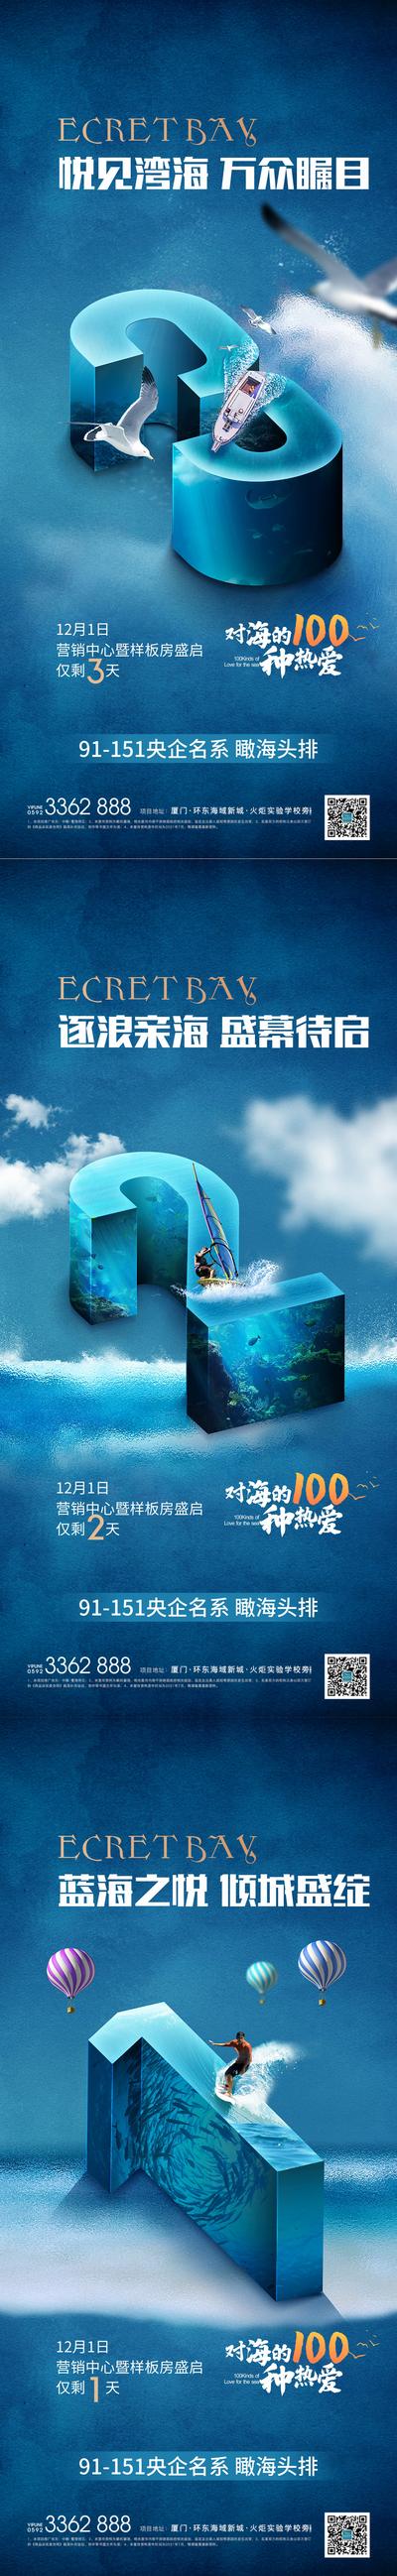 南门网 广告 海报 地产 文旅 倒计时 数字 海洋 海鸥 系列 品质